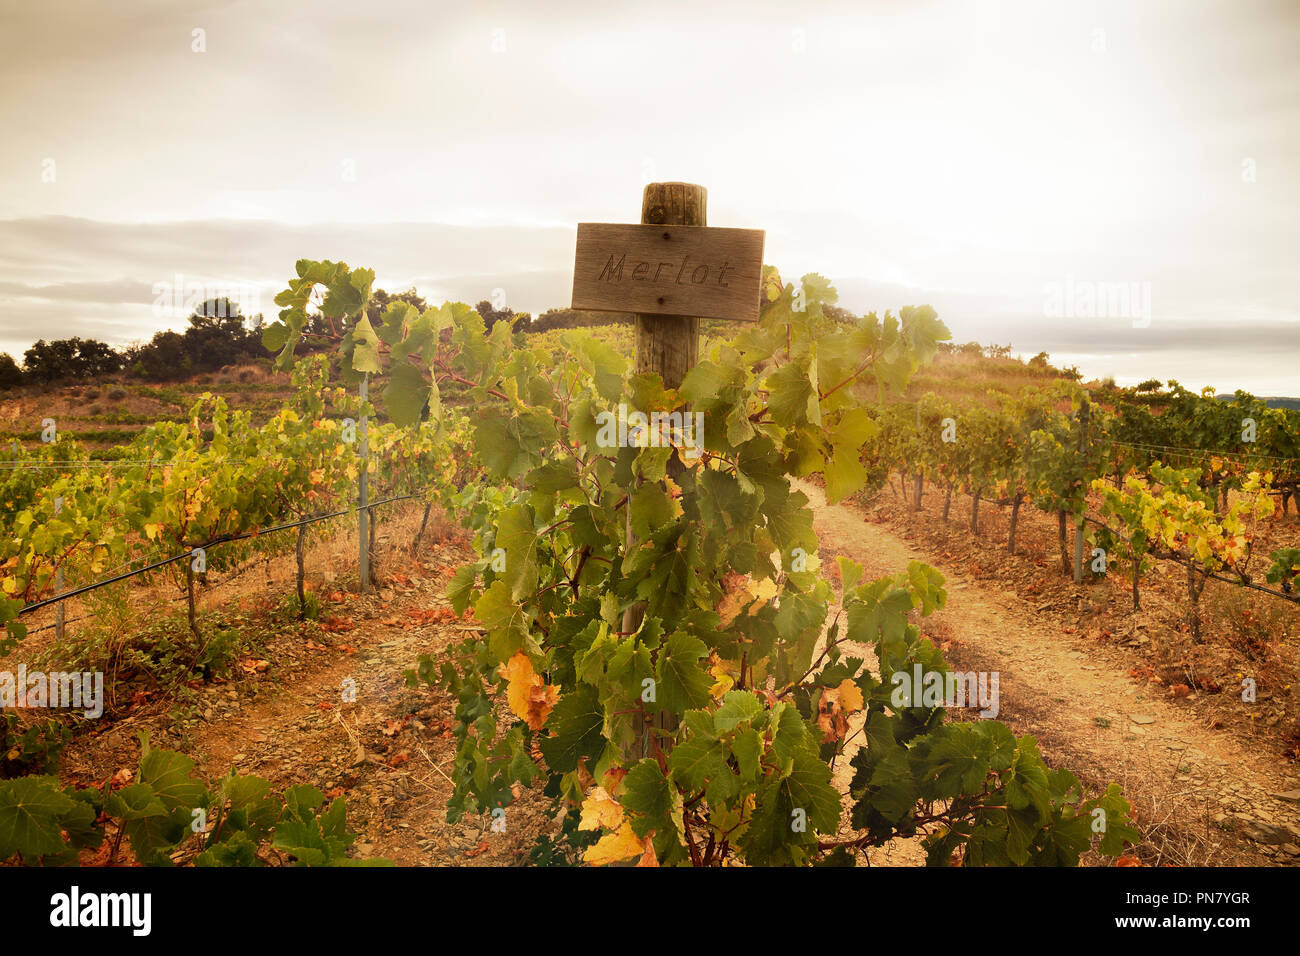 Vue sur le vignoble avec un écriteau 'Merlot' genre de raisins. Ambiance chaleureuse de culture de la vigne. Banque D'Images